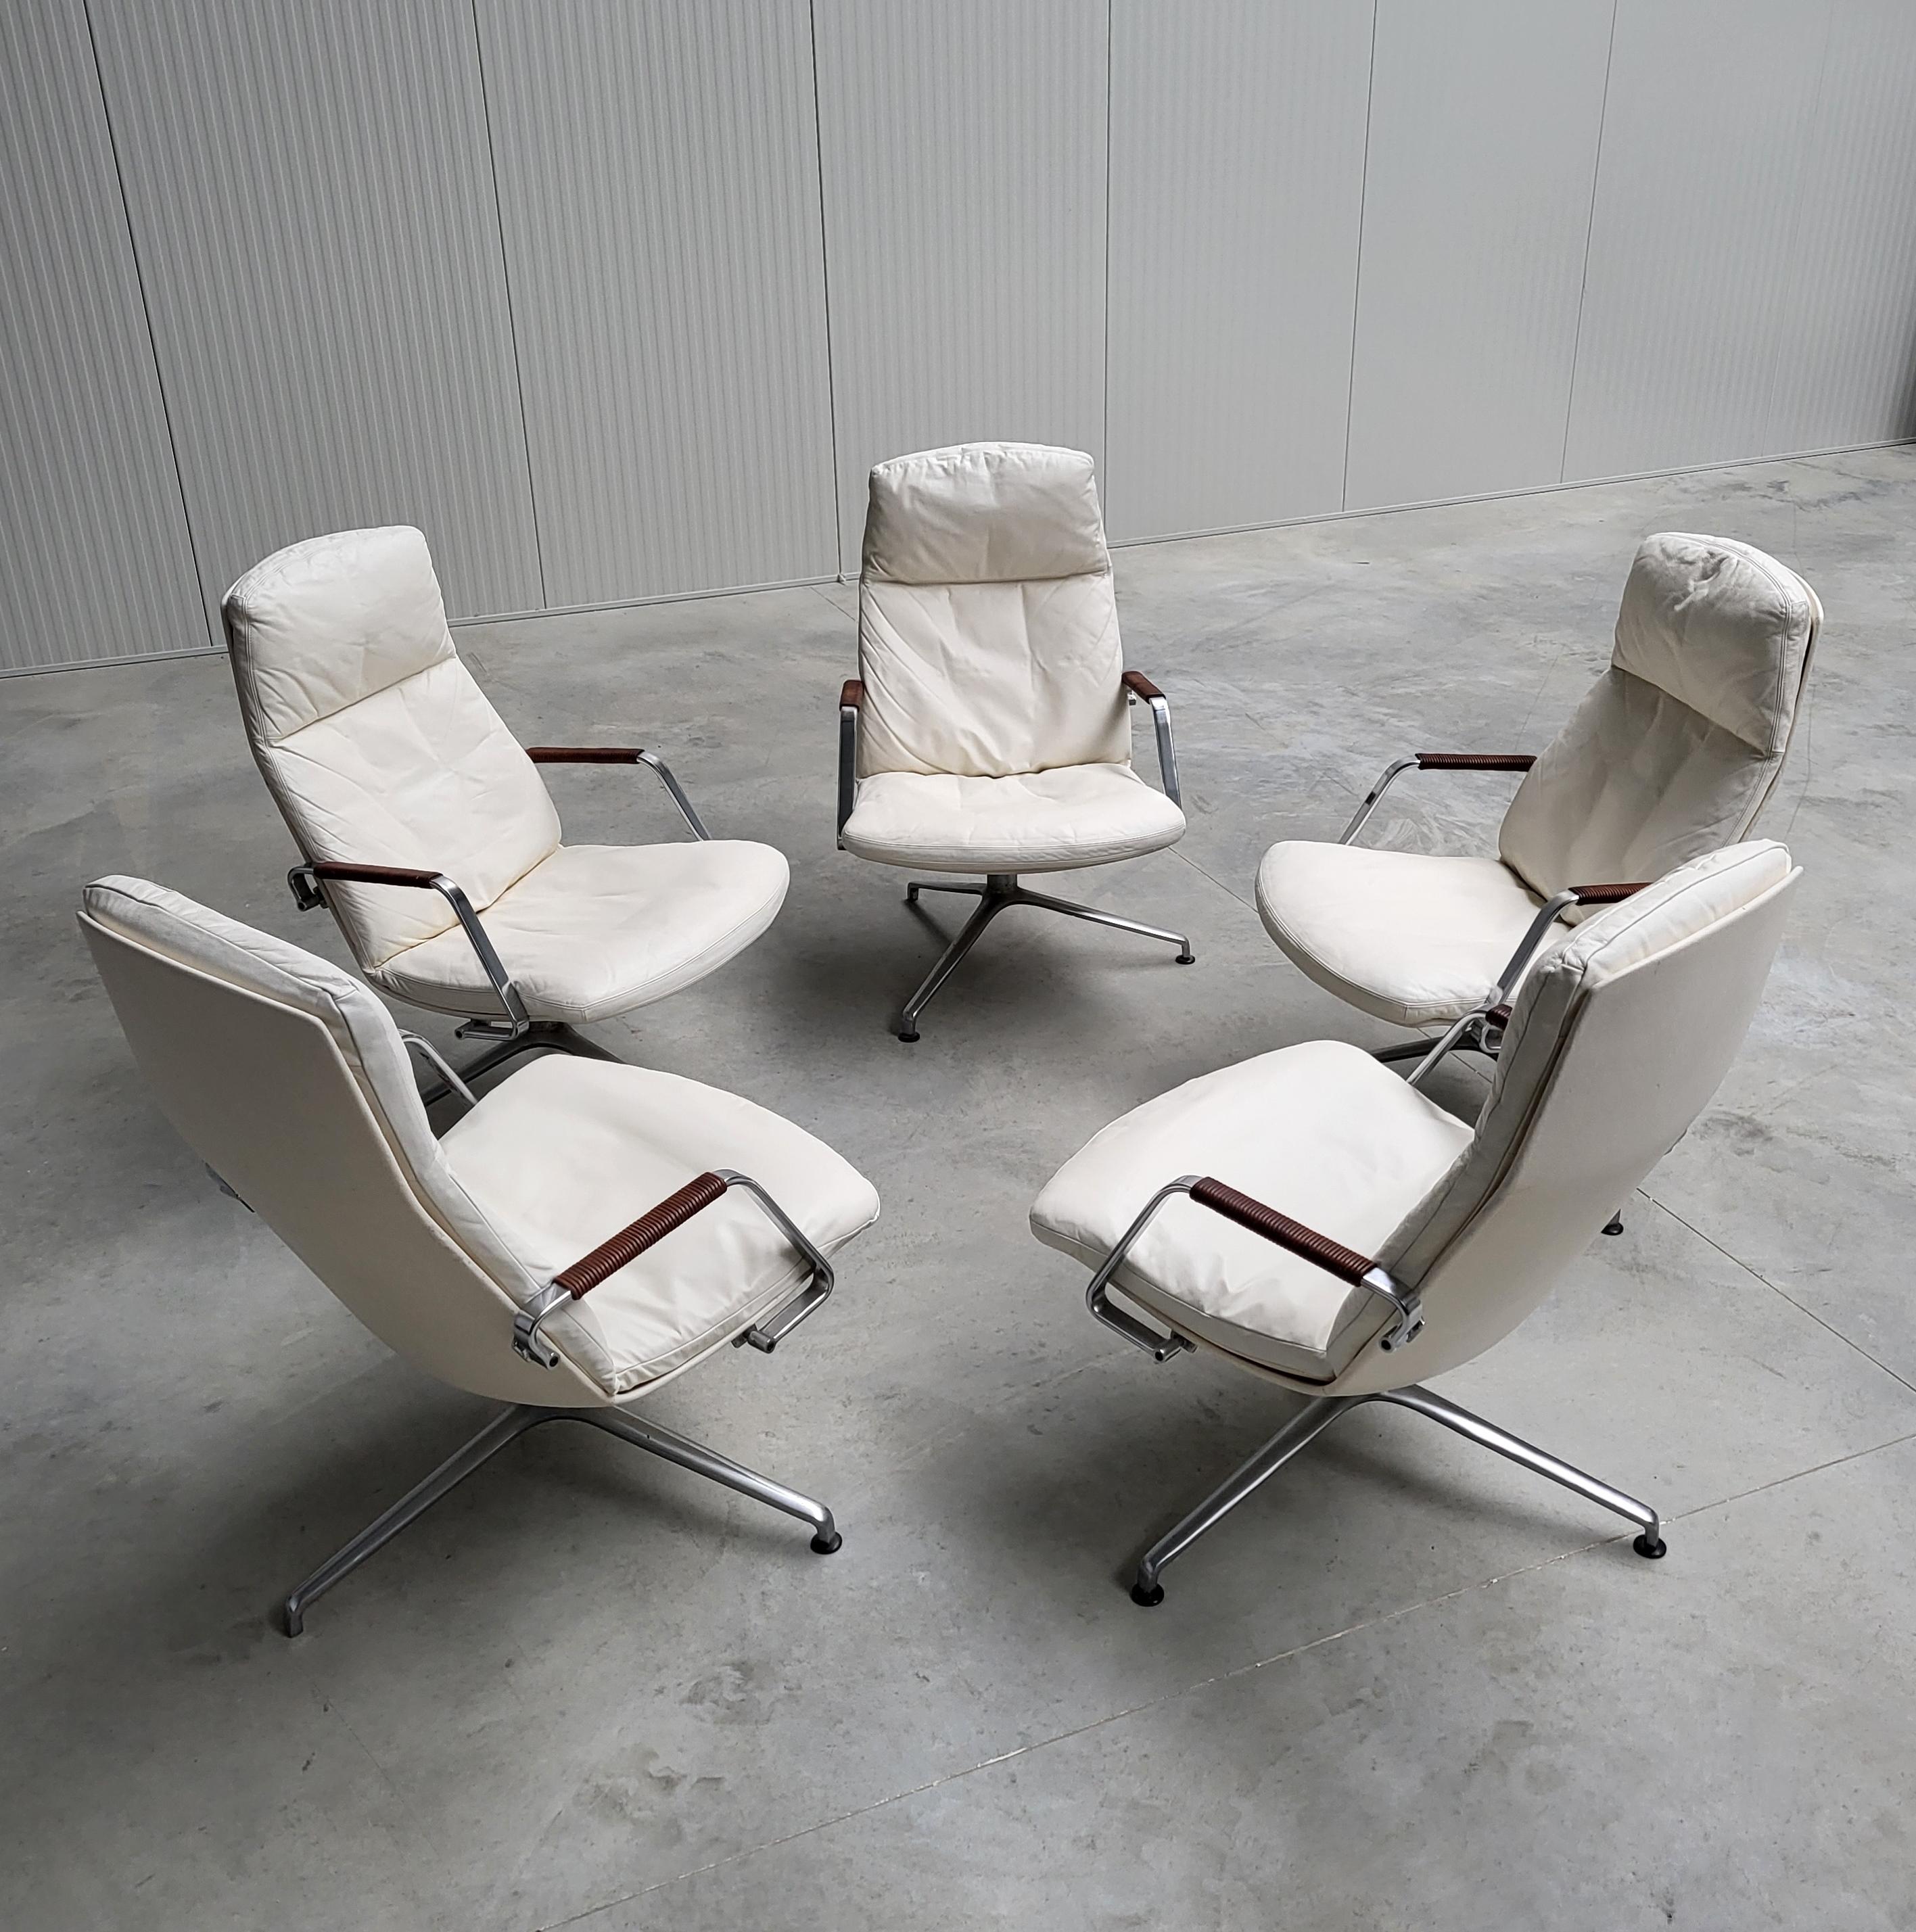 Ce bel exemple de la chaise longue FK86 a été conçu par Jorgen Kastholm & Preben Fabricius au début des années 60 et produit par Kill International à la fin des années 60. 

Cette édition est une édition très précoce des premières années de